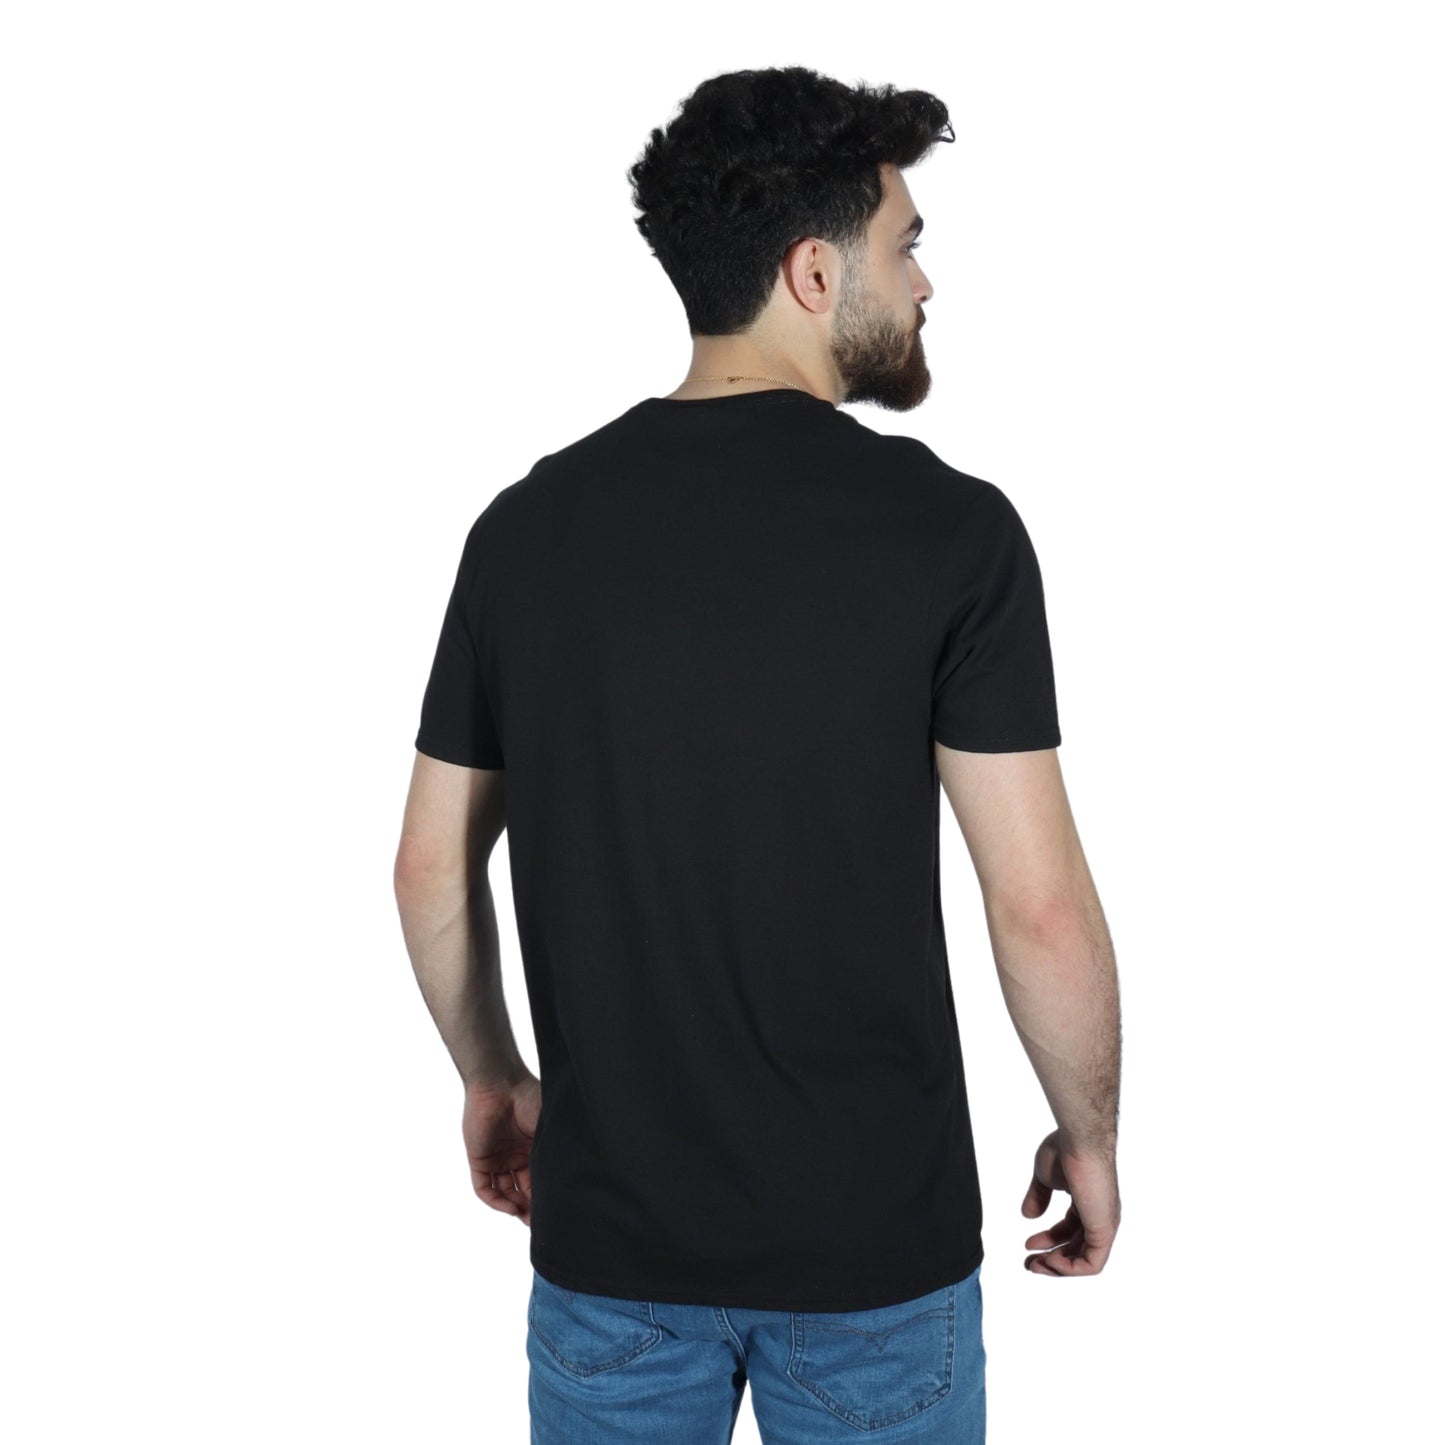 DELTA SOFT Mens Tops L / Black DELTA SOFT - Short Sleeve T-Shirt